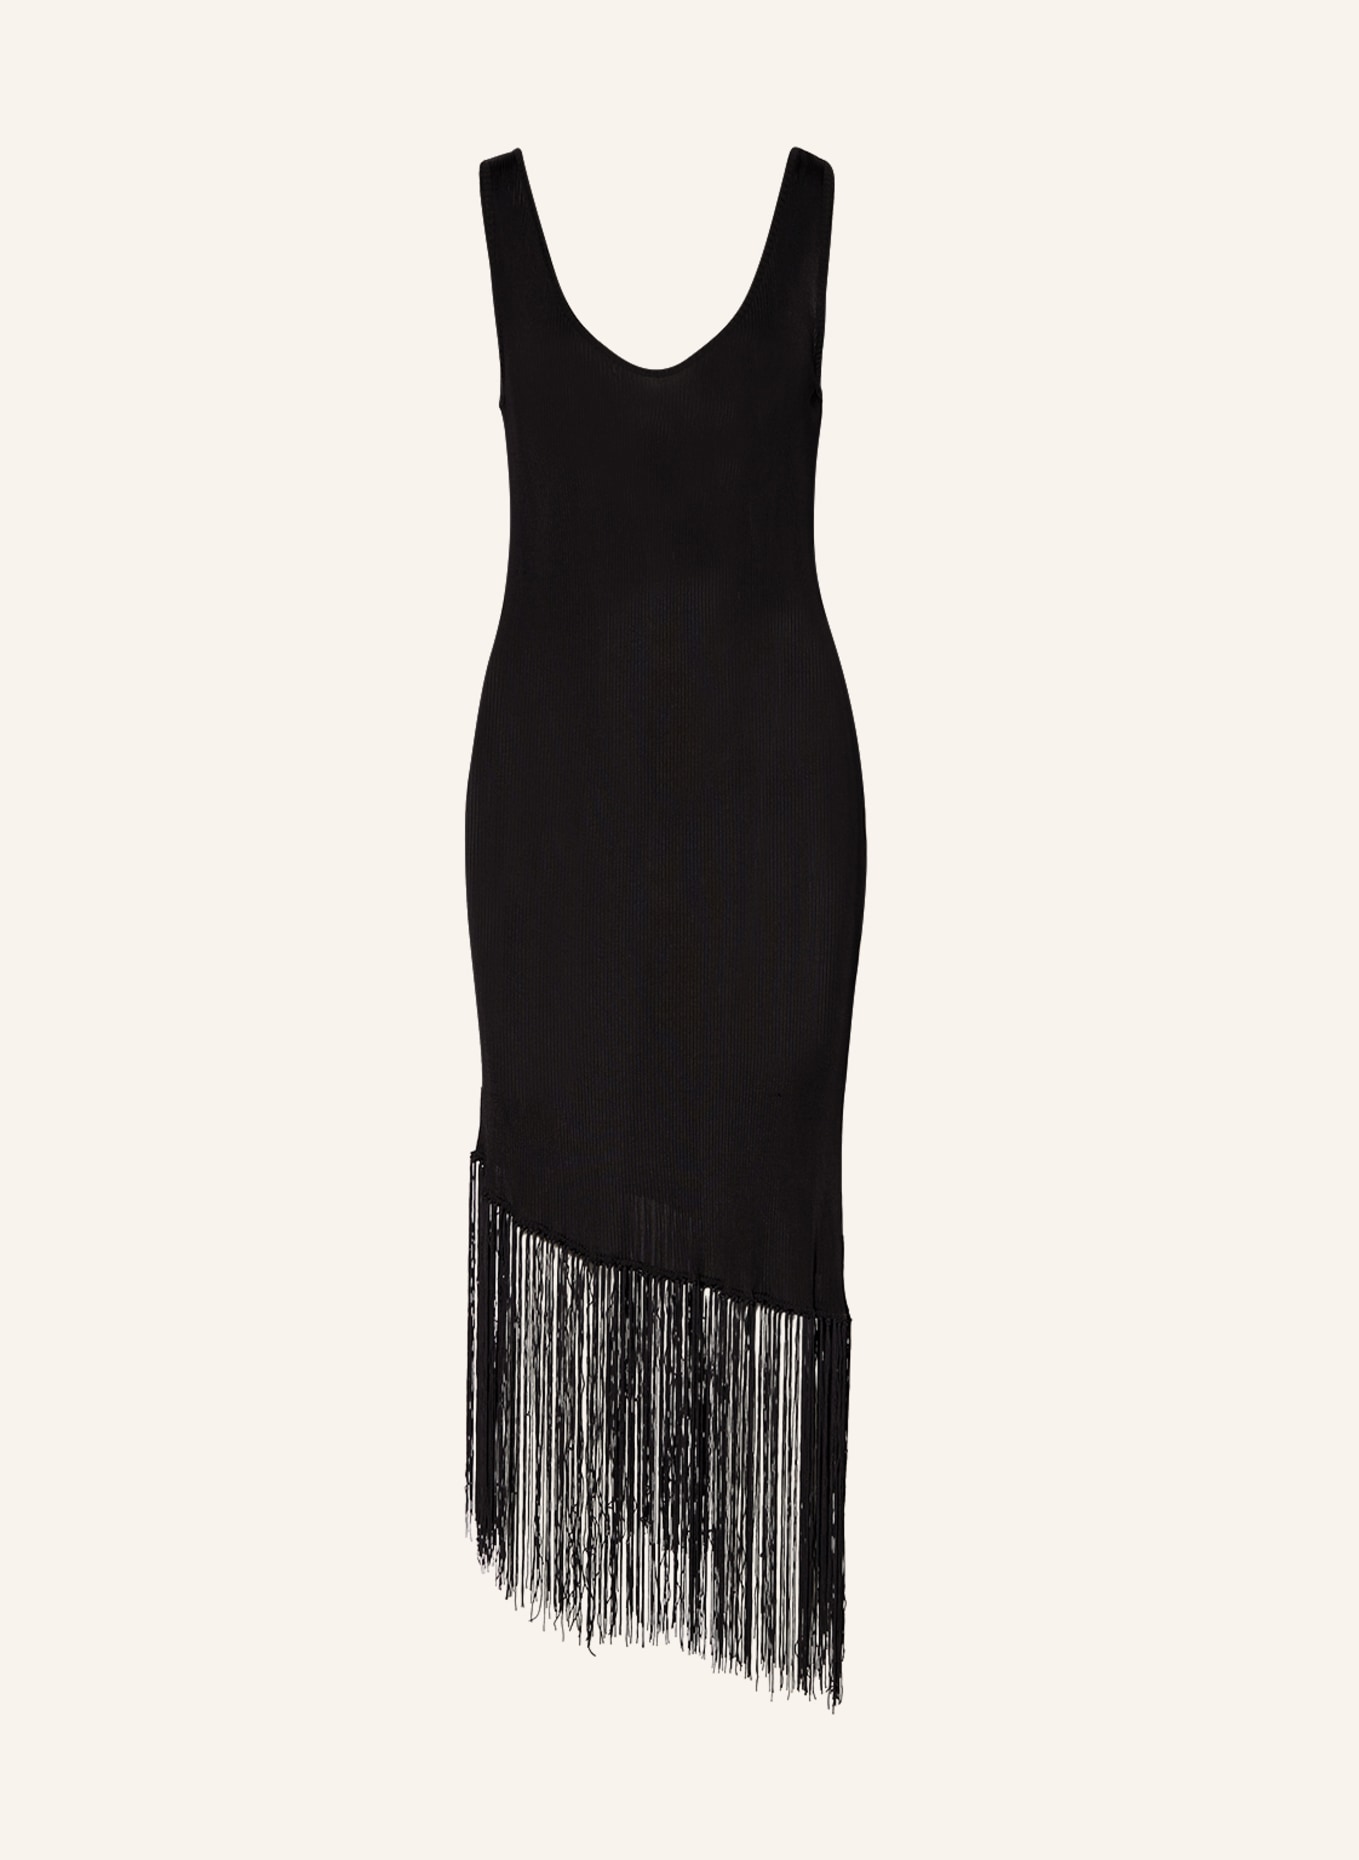 ENVELOPE 1976 Dress LE PROGRES, Color: BLACK (Image 1)